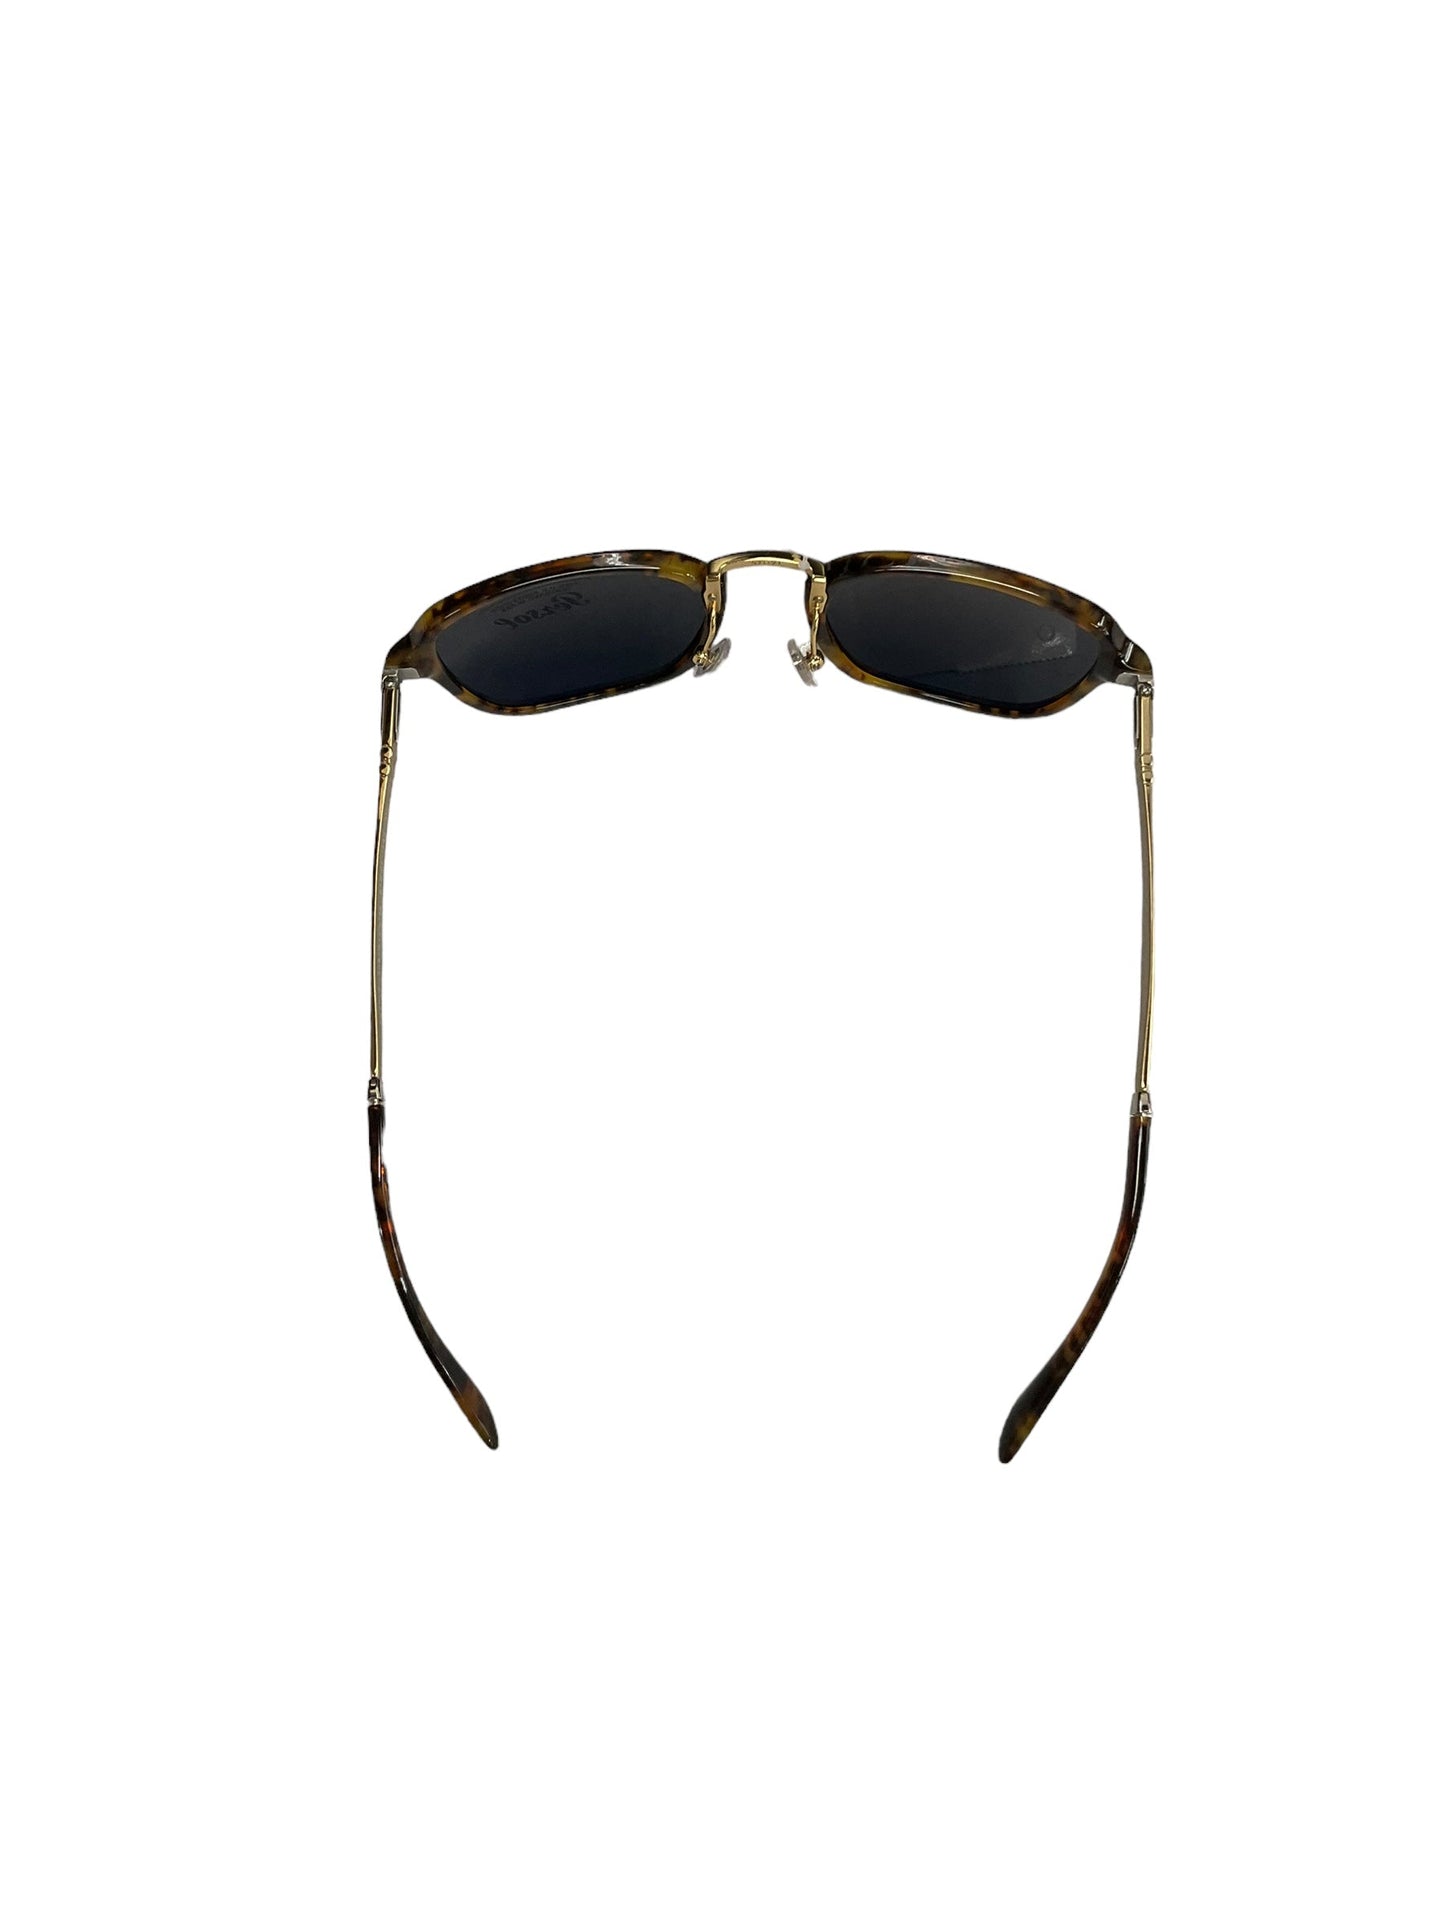 Sunglasses Designer Clothes Mentor